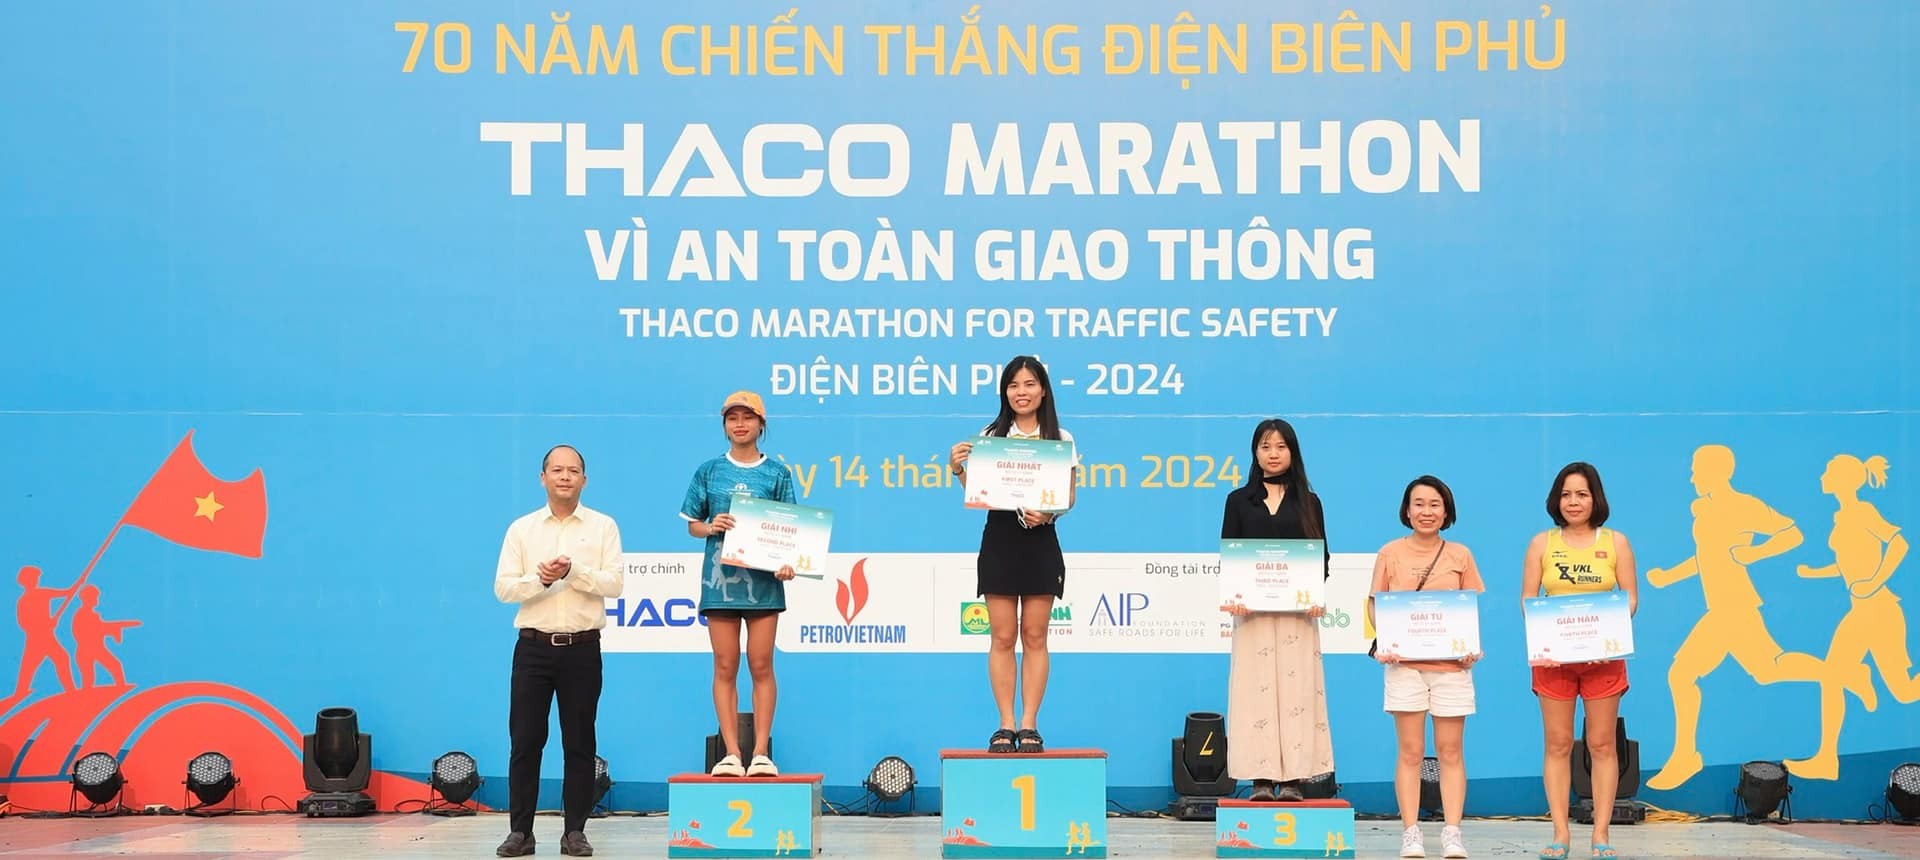 thaco-marathon-1713713136.jpg